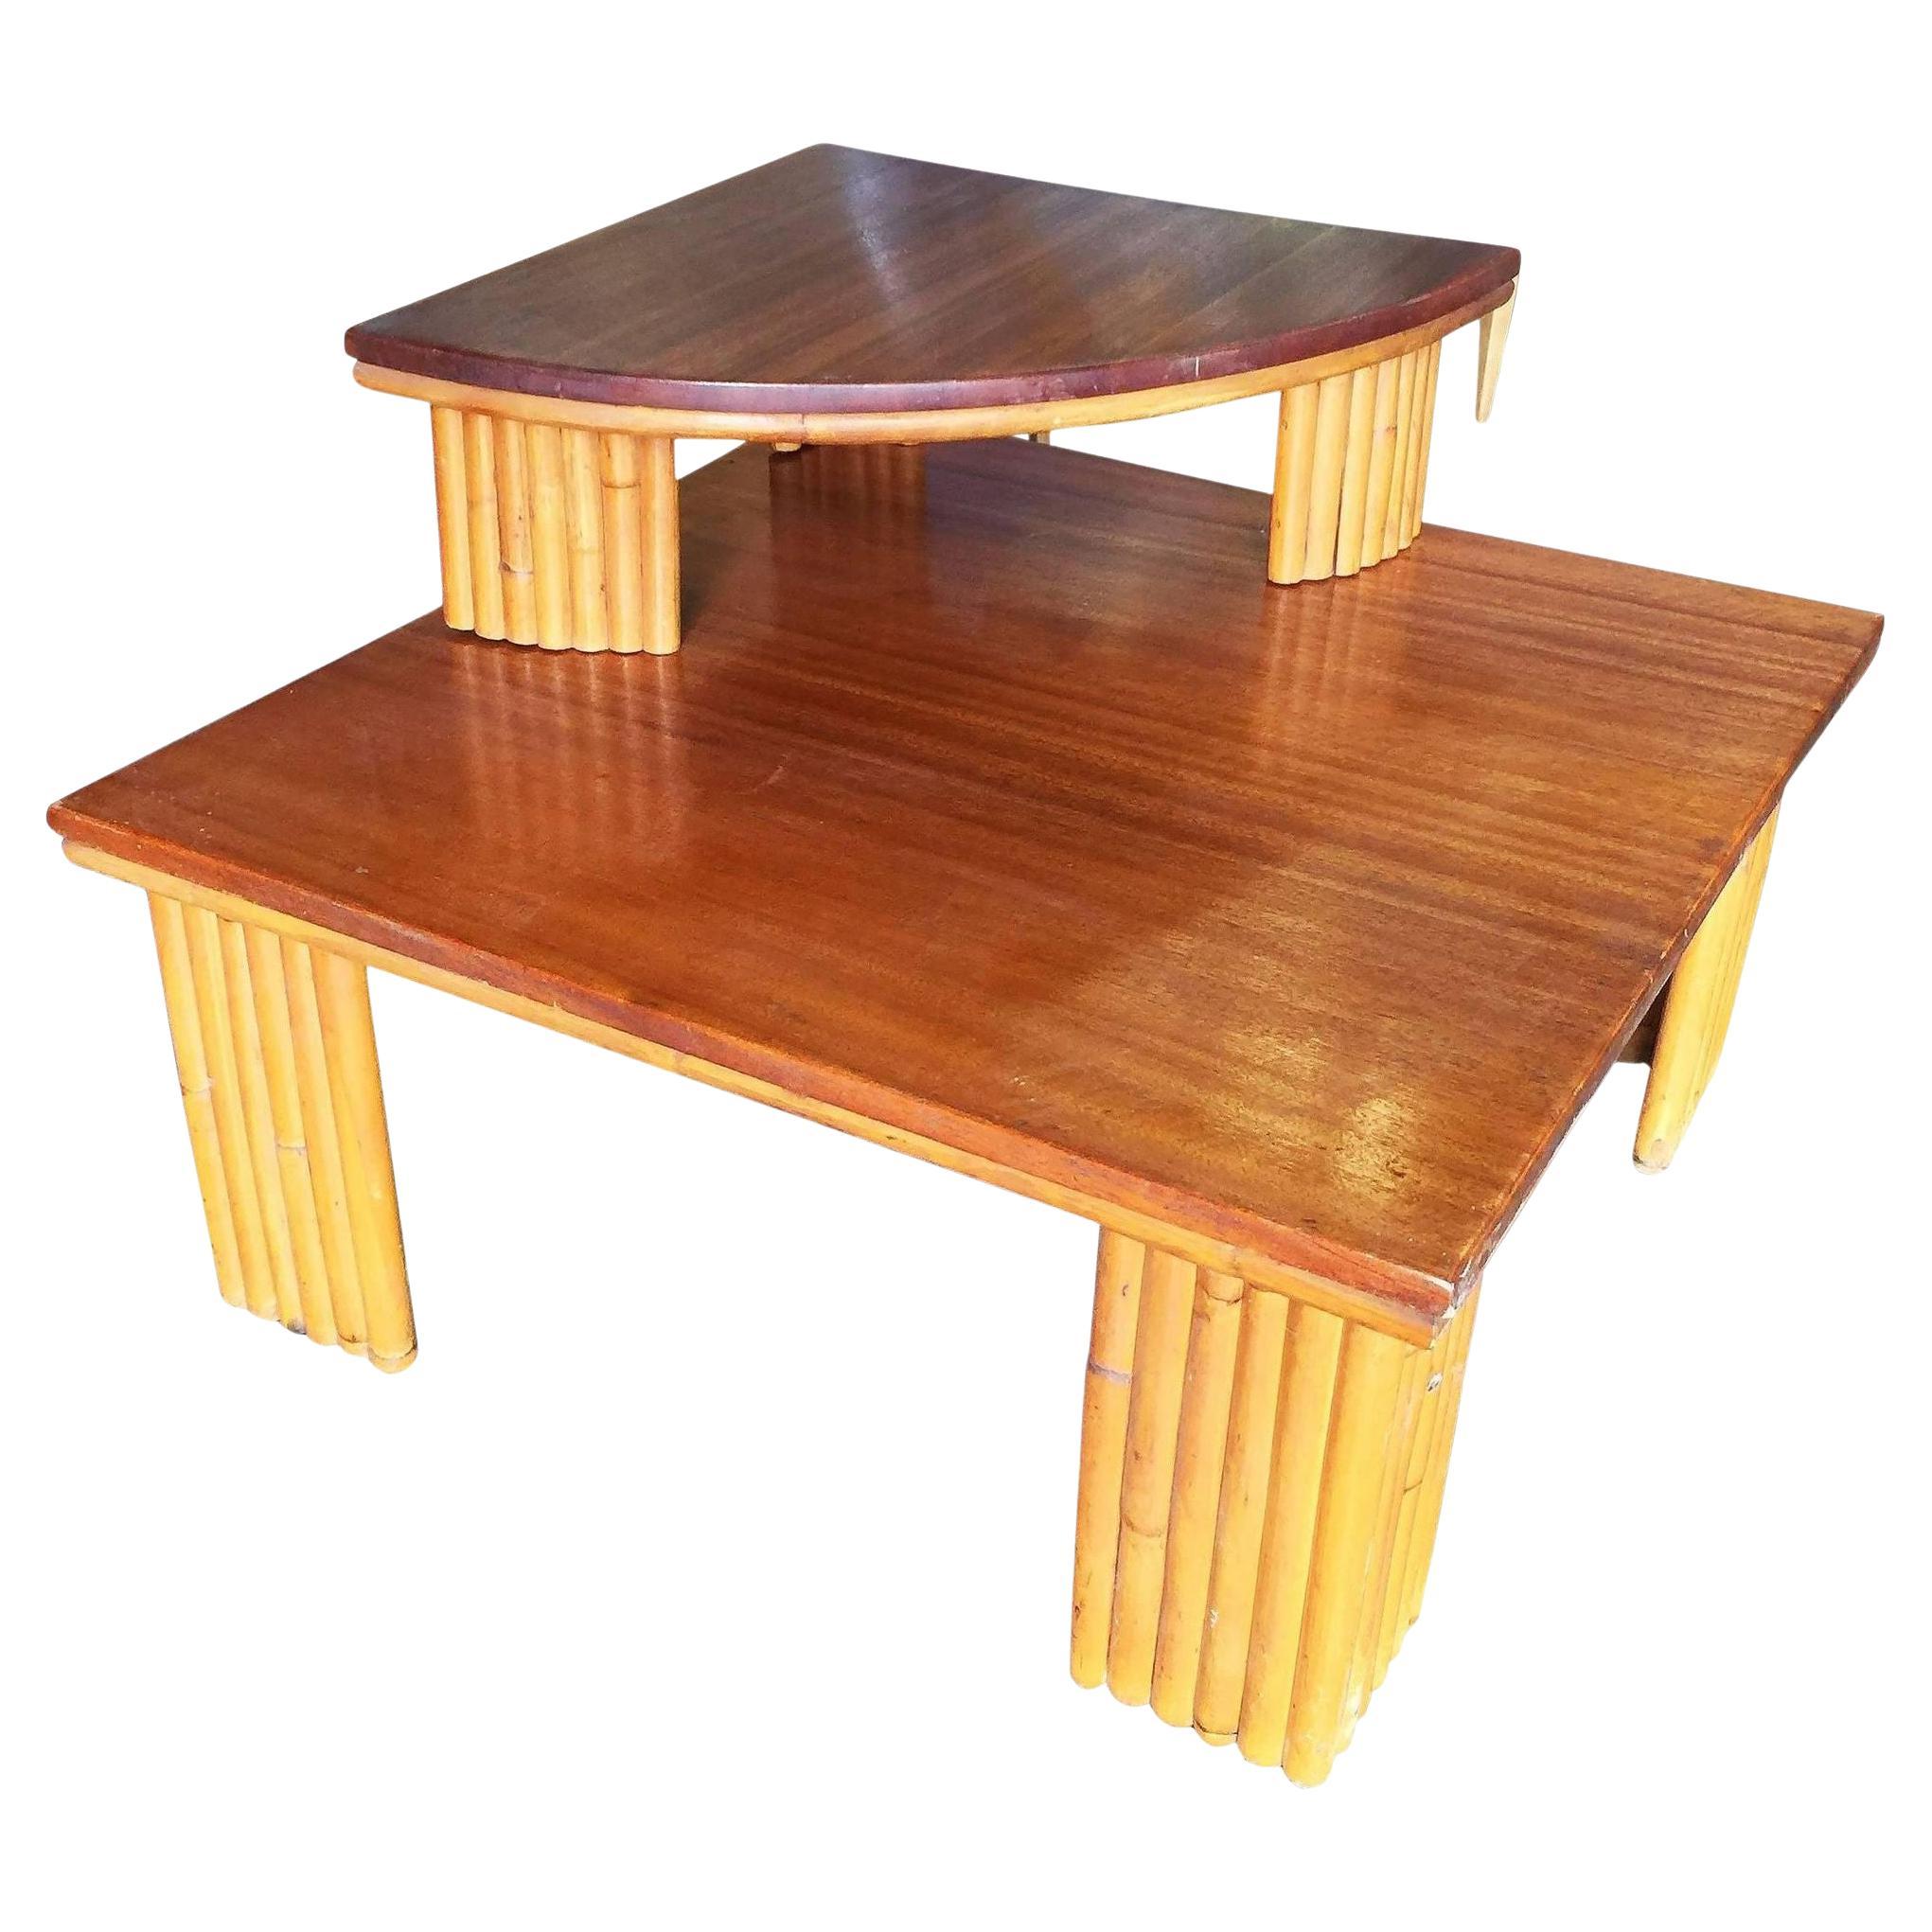 Table d'angle restaurée à deux niveaux avec pieds en rotin empilés et plateau en acajou